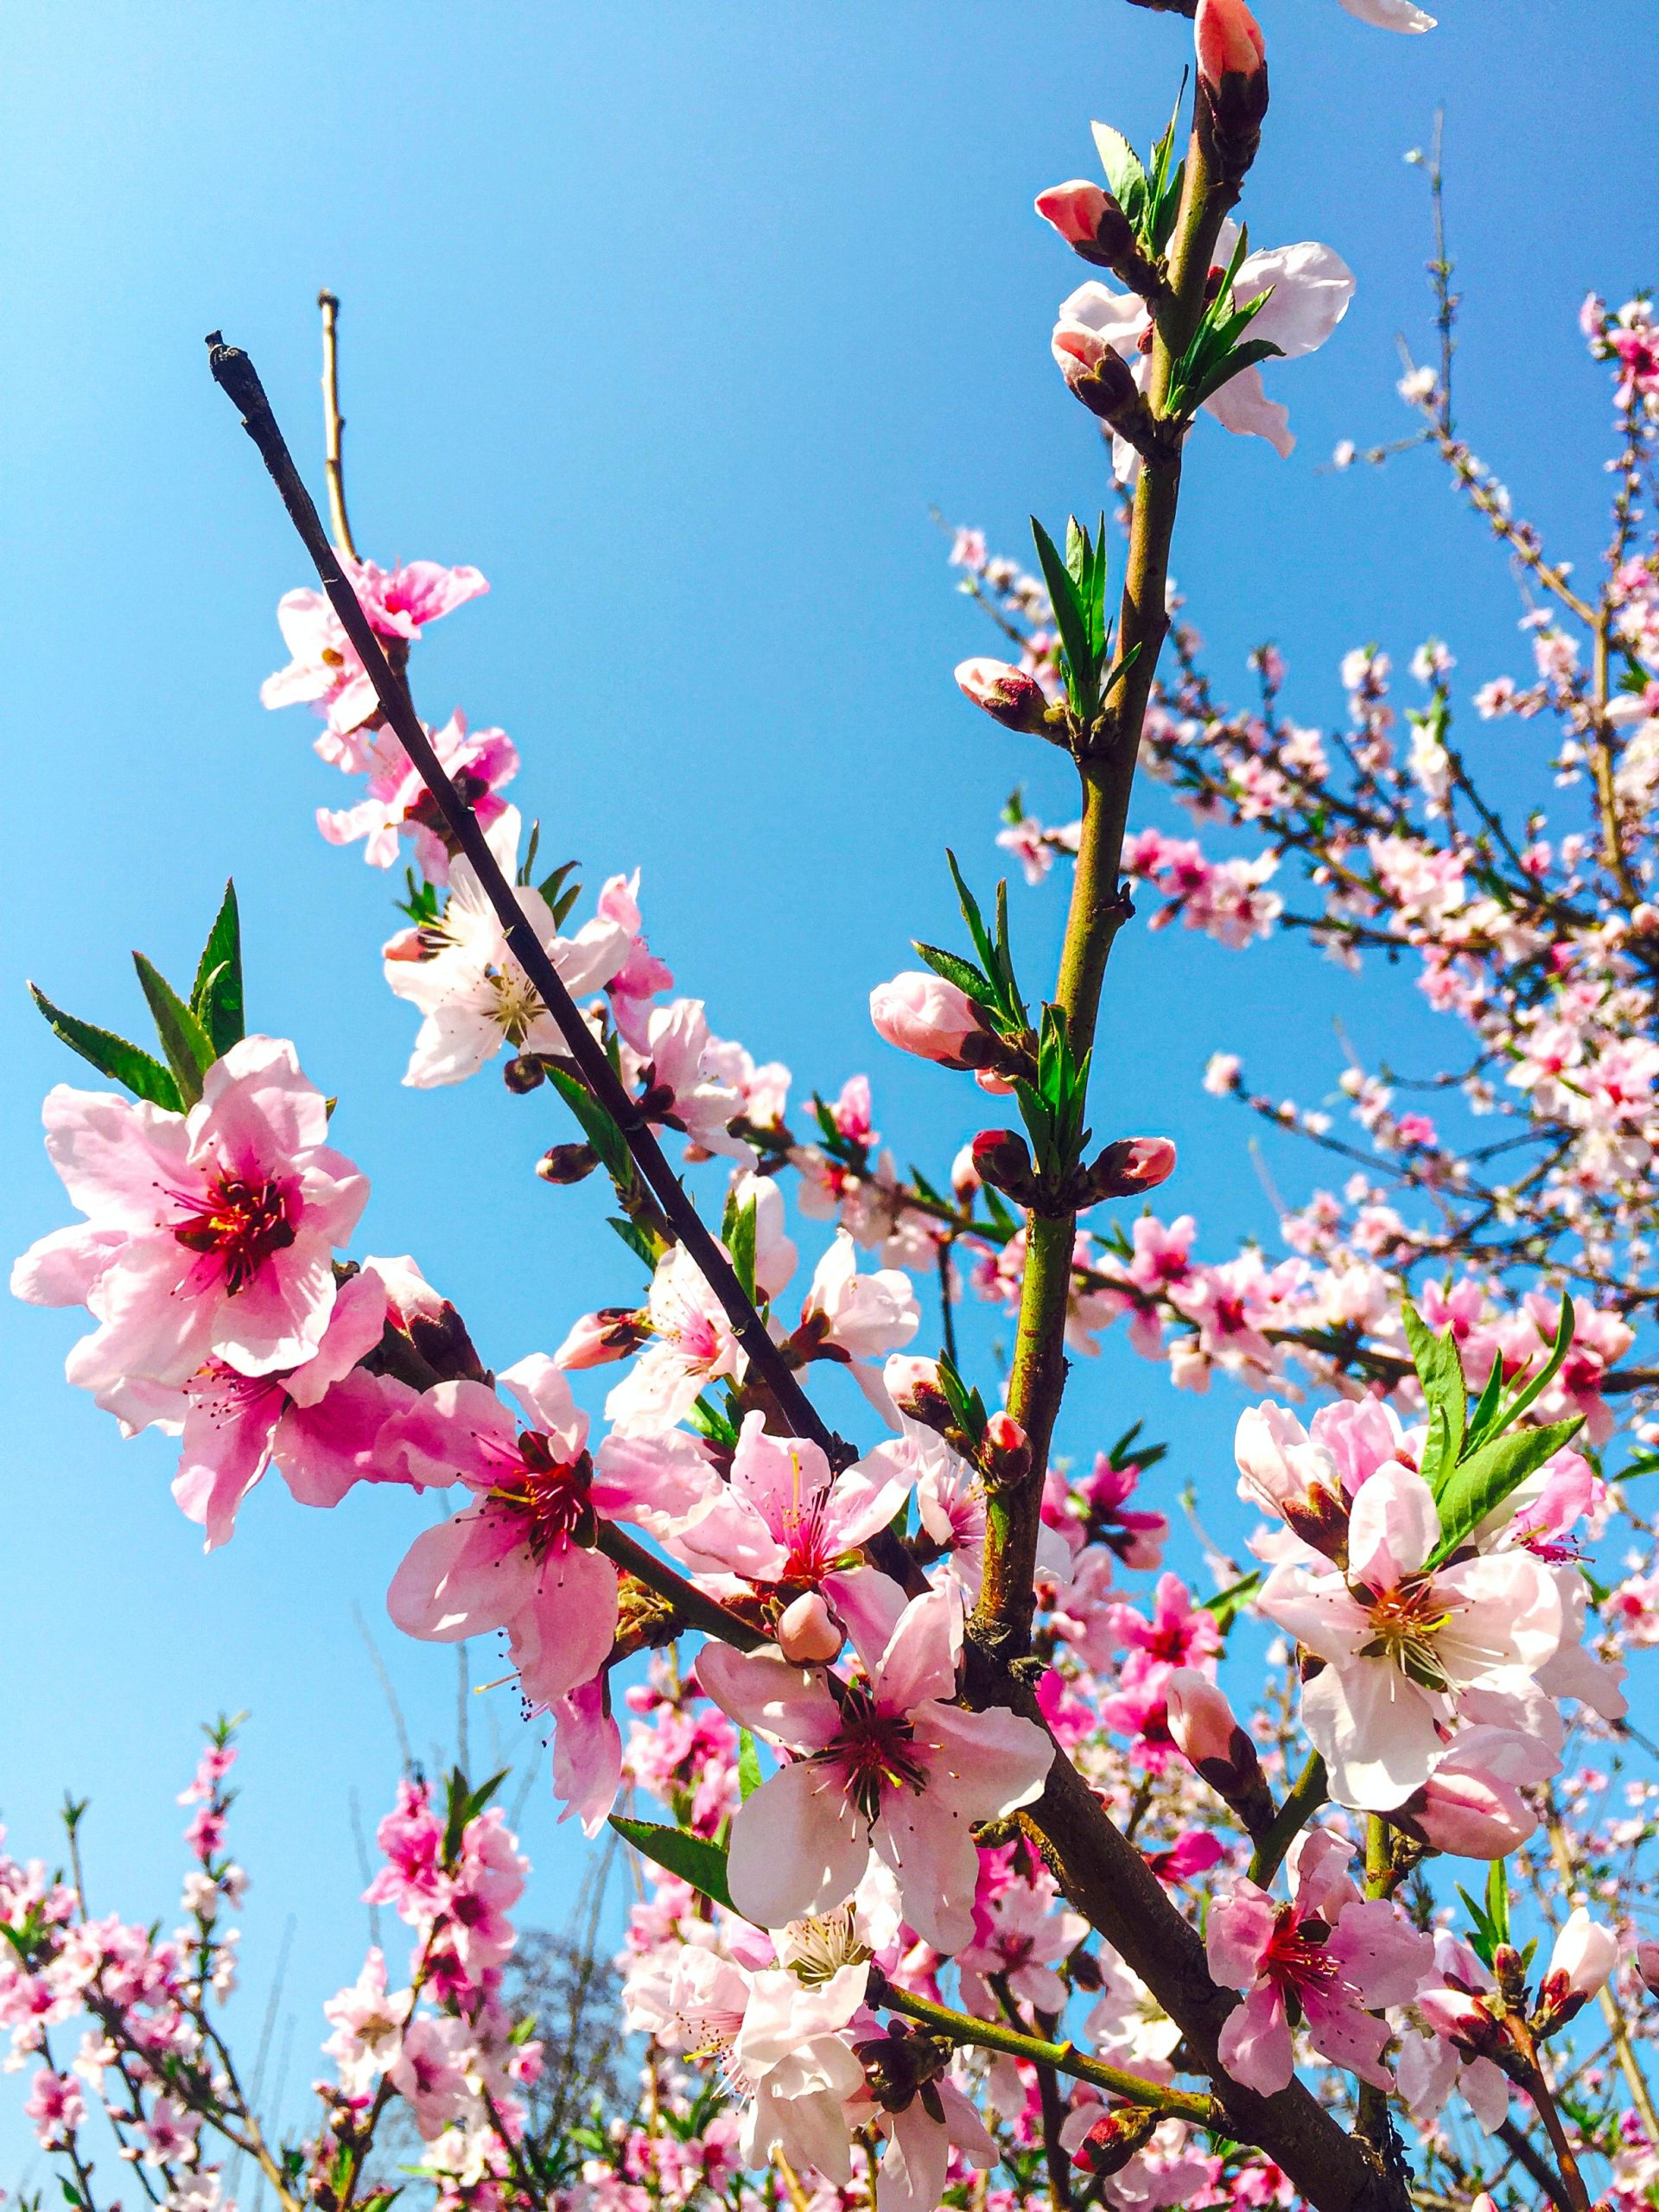 Bộ sưu tập những hình ảnh hoa đào ngày xuân đẹp nhất giúp bạn cảm nhận  không khí Tết đang về phần 1  Đài phát thanh và truyền hình Vĩnh Phúc